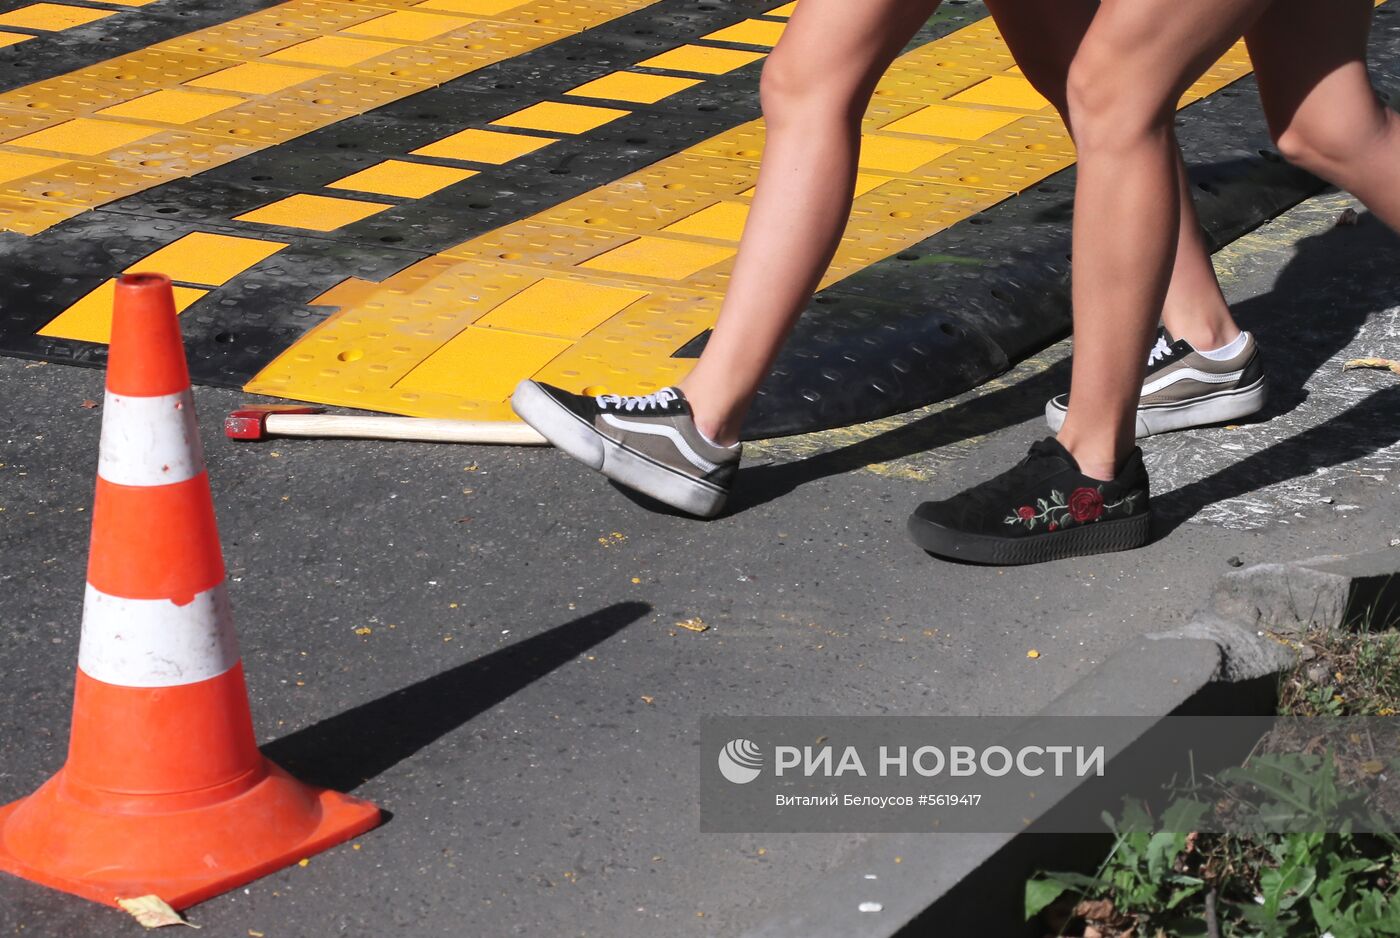 Первый приподнятый пешеходный переход установили в Москве